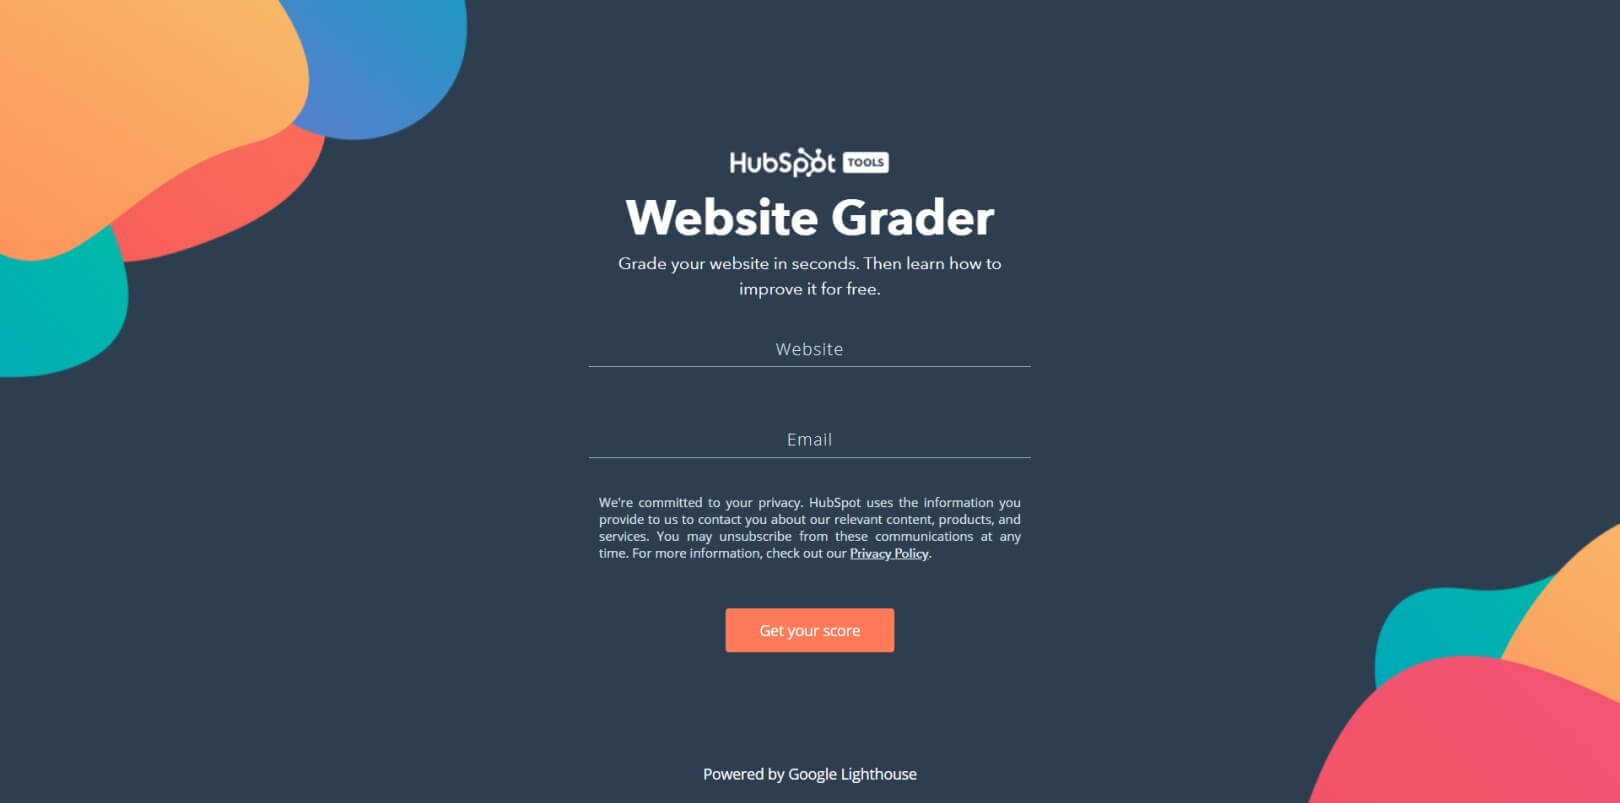 Website Grader